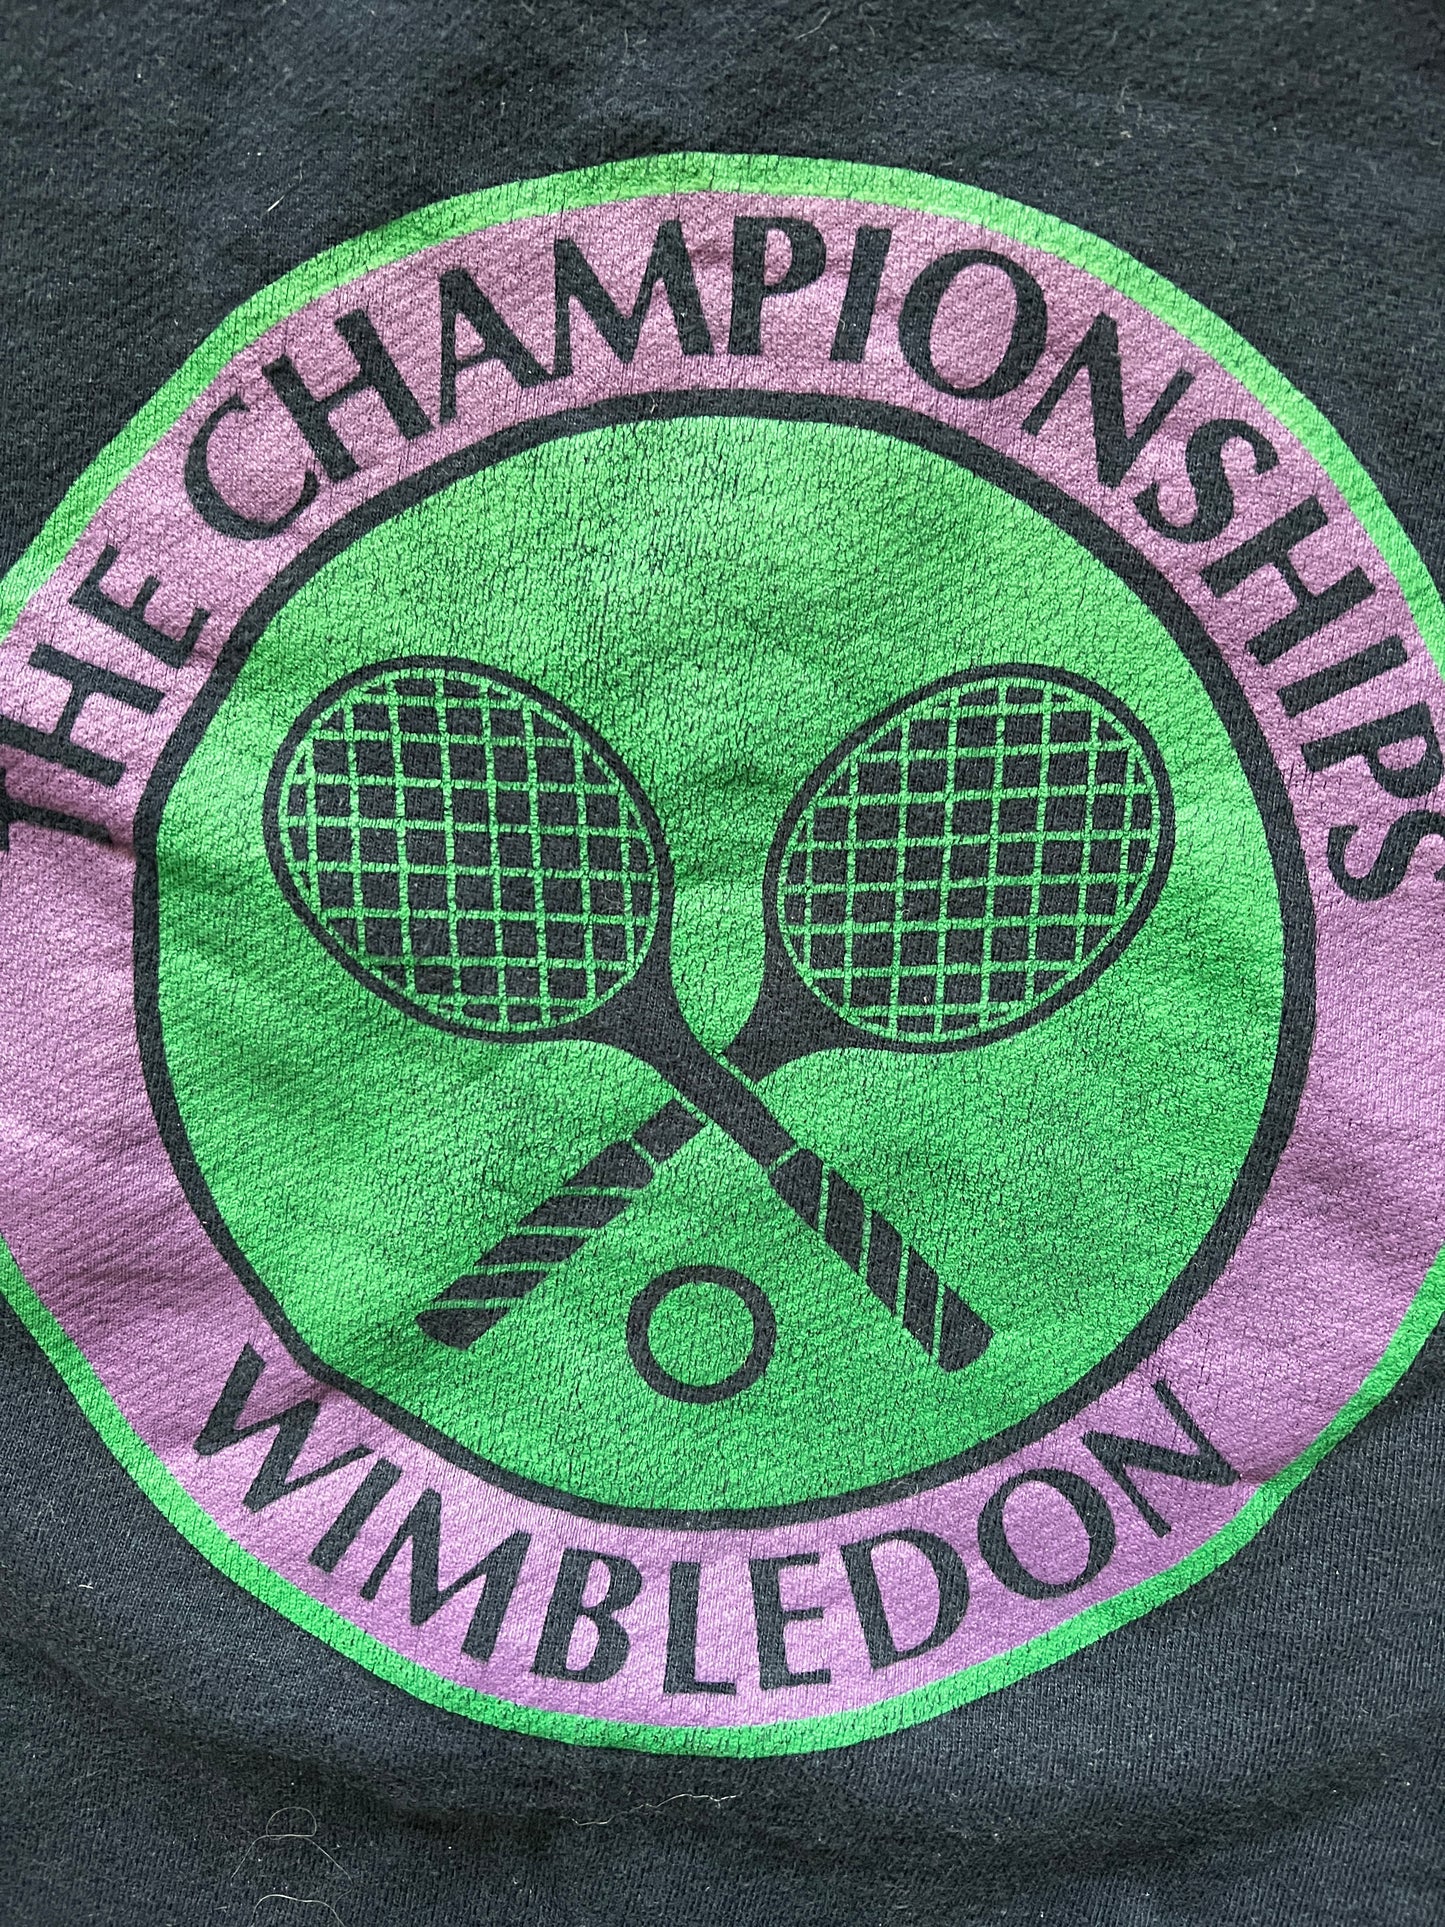 Vintage Wimbledon Crewneck Sweater (circa 2000s)